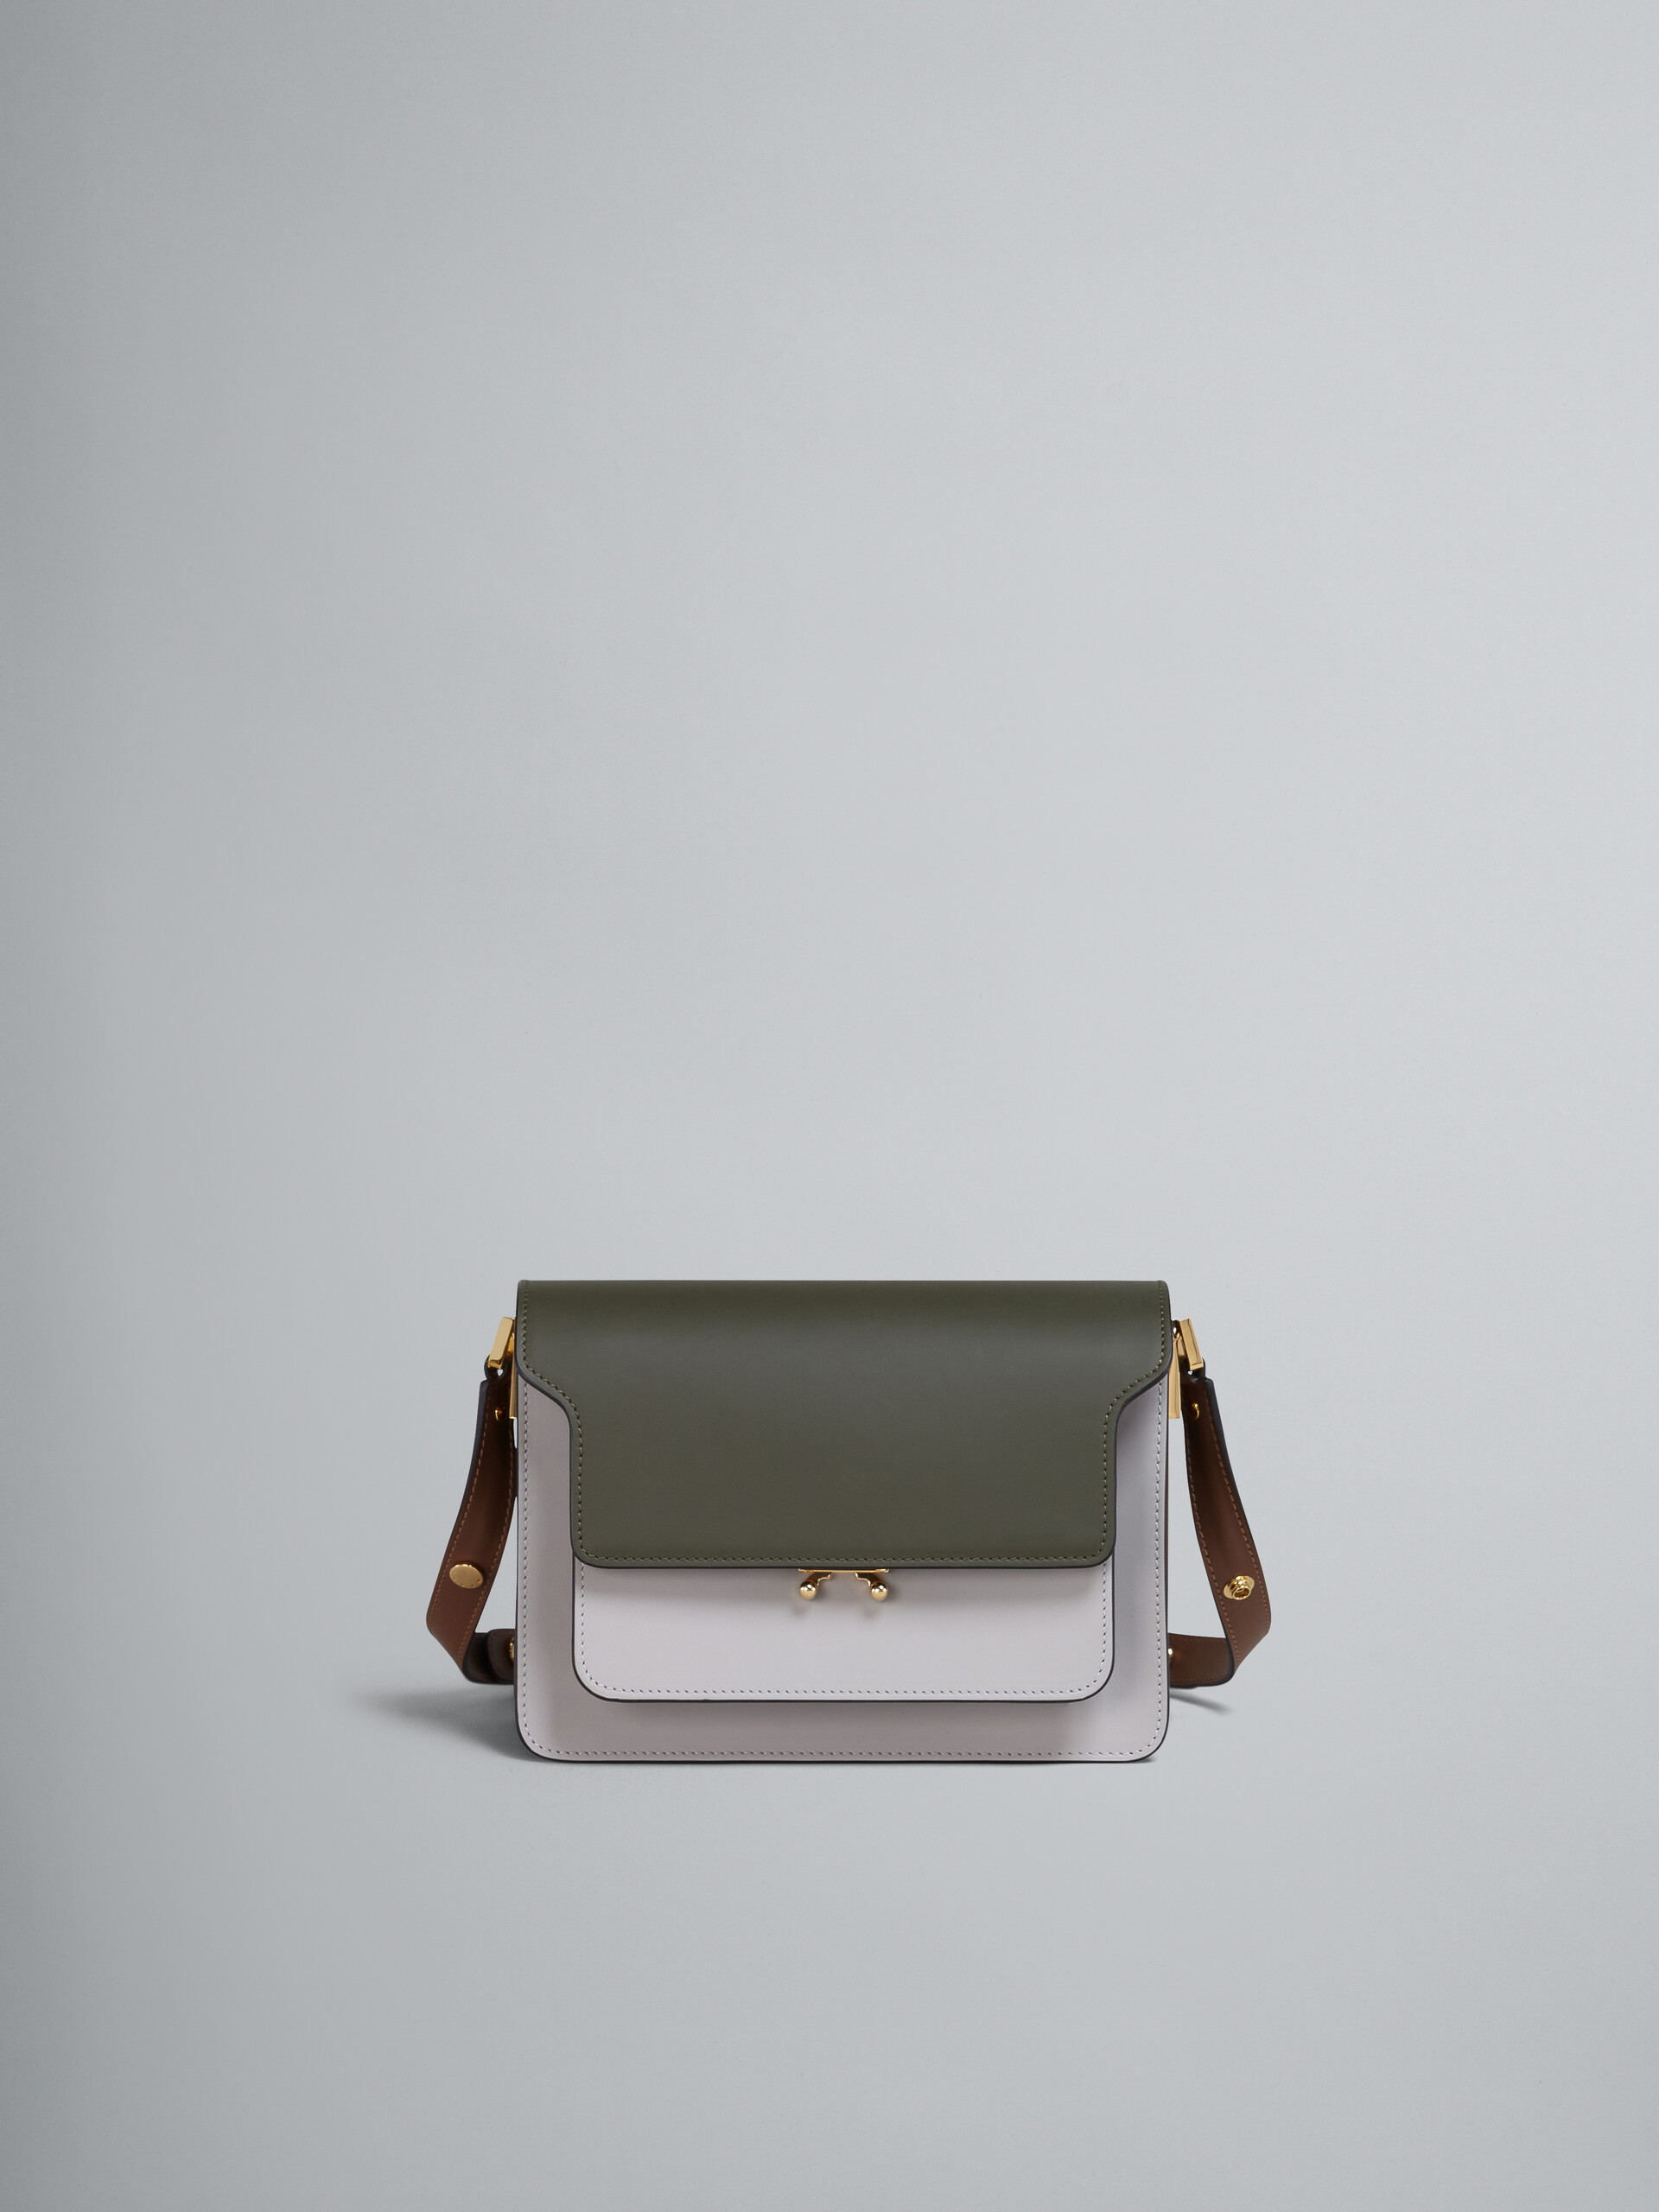 TRUNK bag in vitello liscio verde bianco e beige - Borse a spalla - Image 1